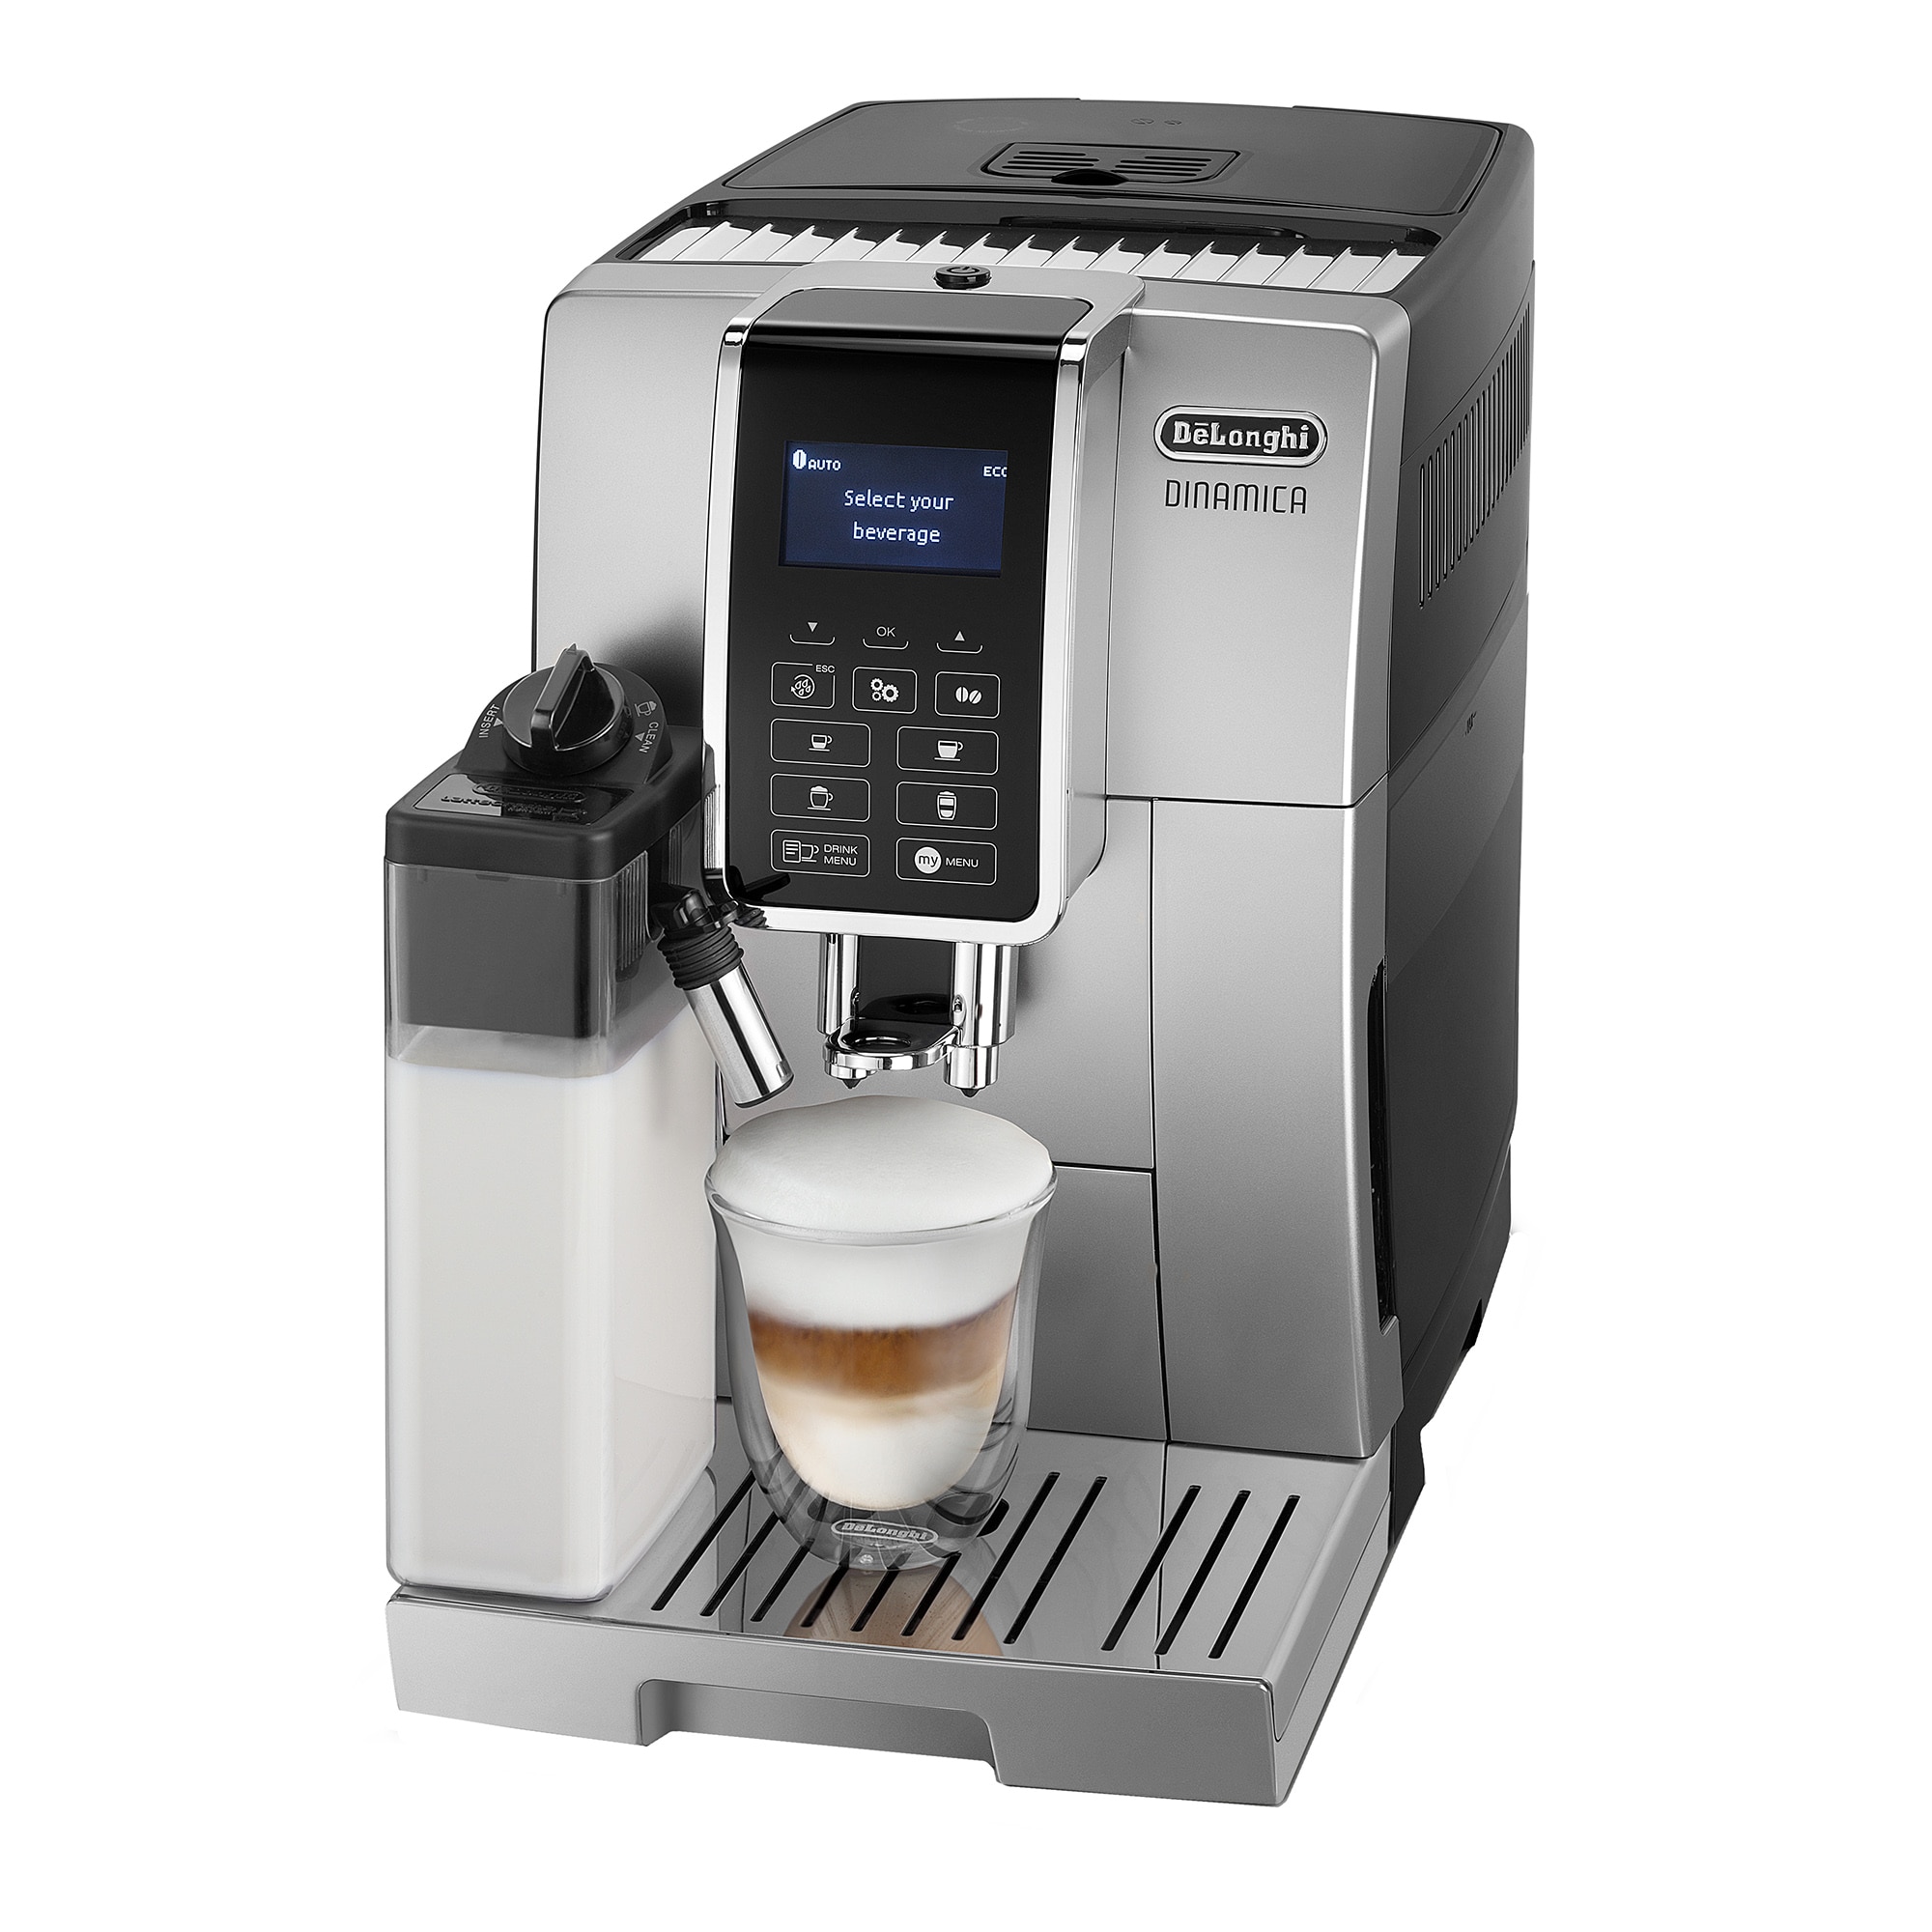 Fotografie Espressor automat De’Longhi Dinamica ECAM 350.55.SB, 1450W, 15 bar, carafa pentru lapte, sistem LatteCrema, rasnita cu 13 setari, negru/ argintiu